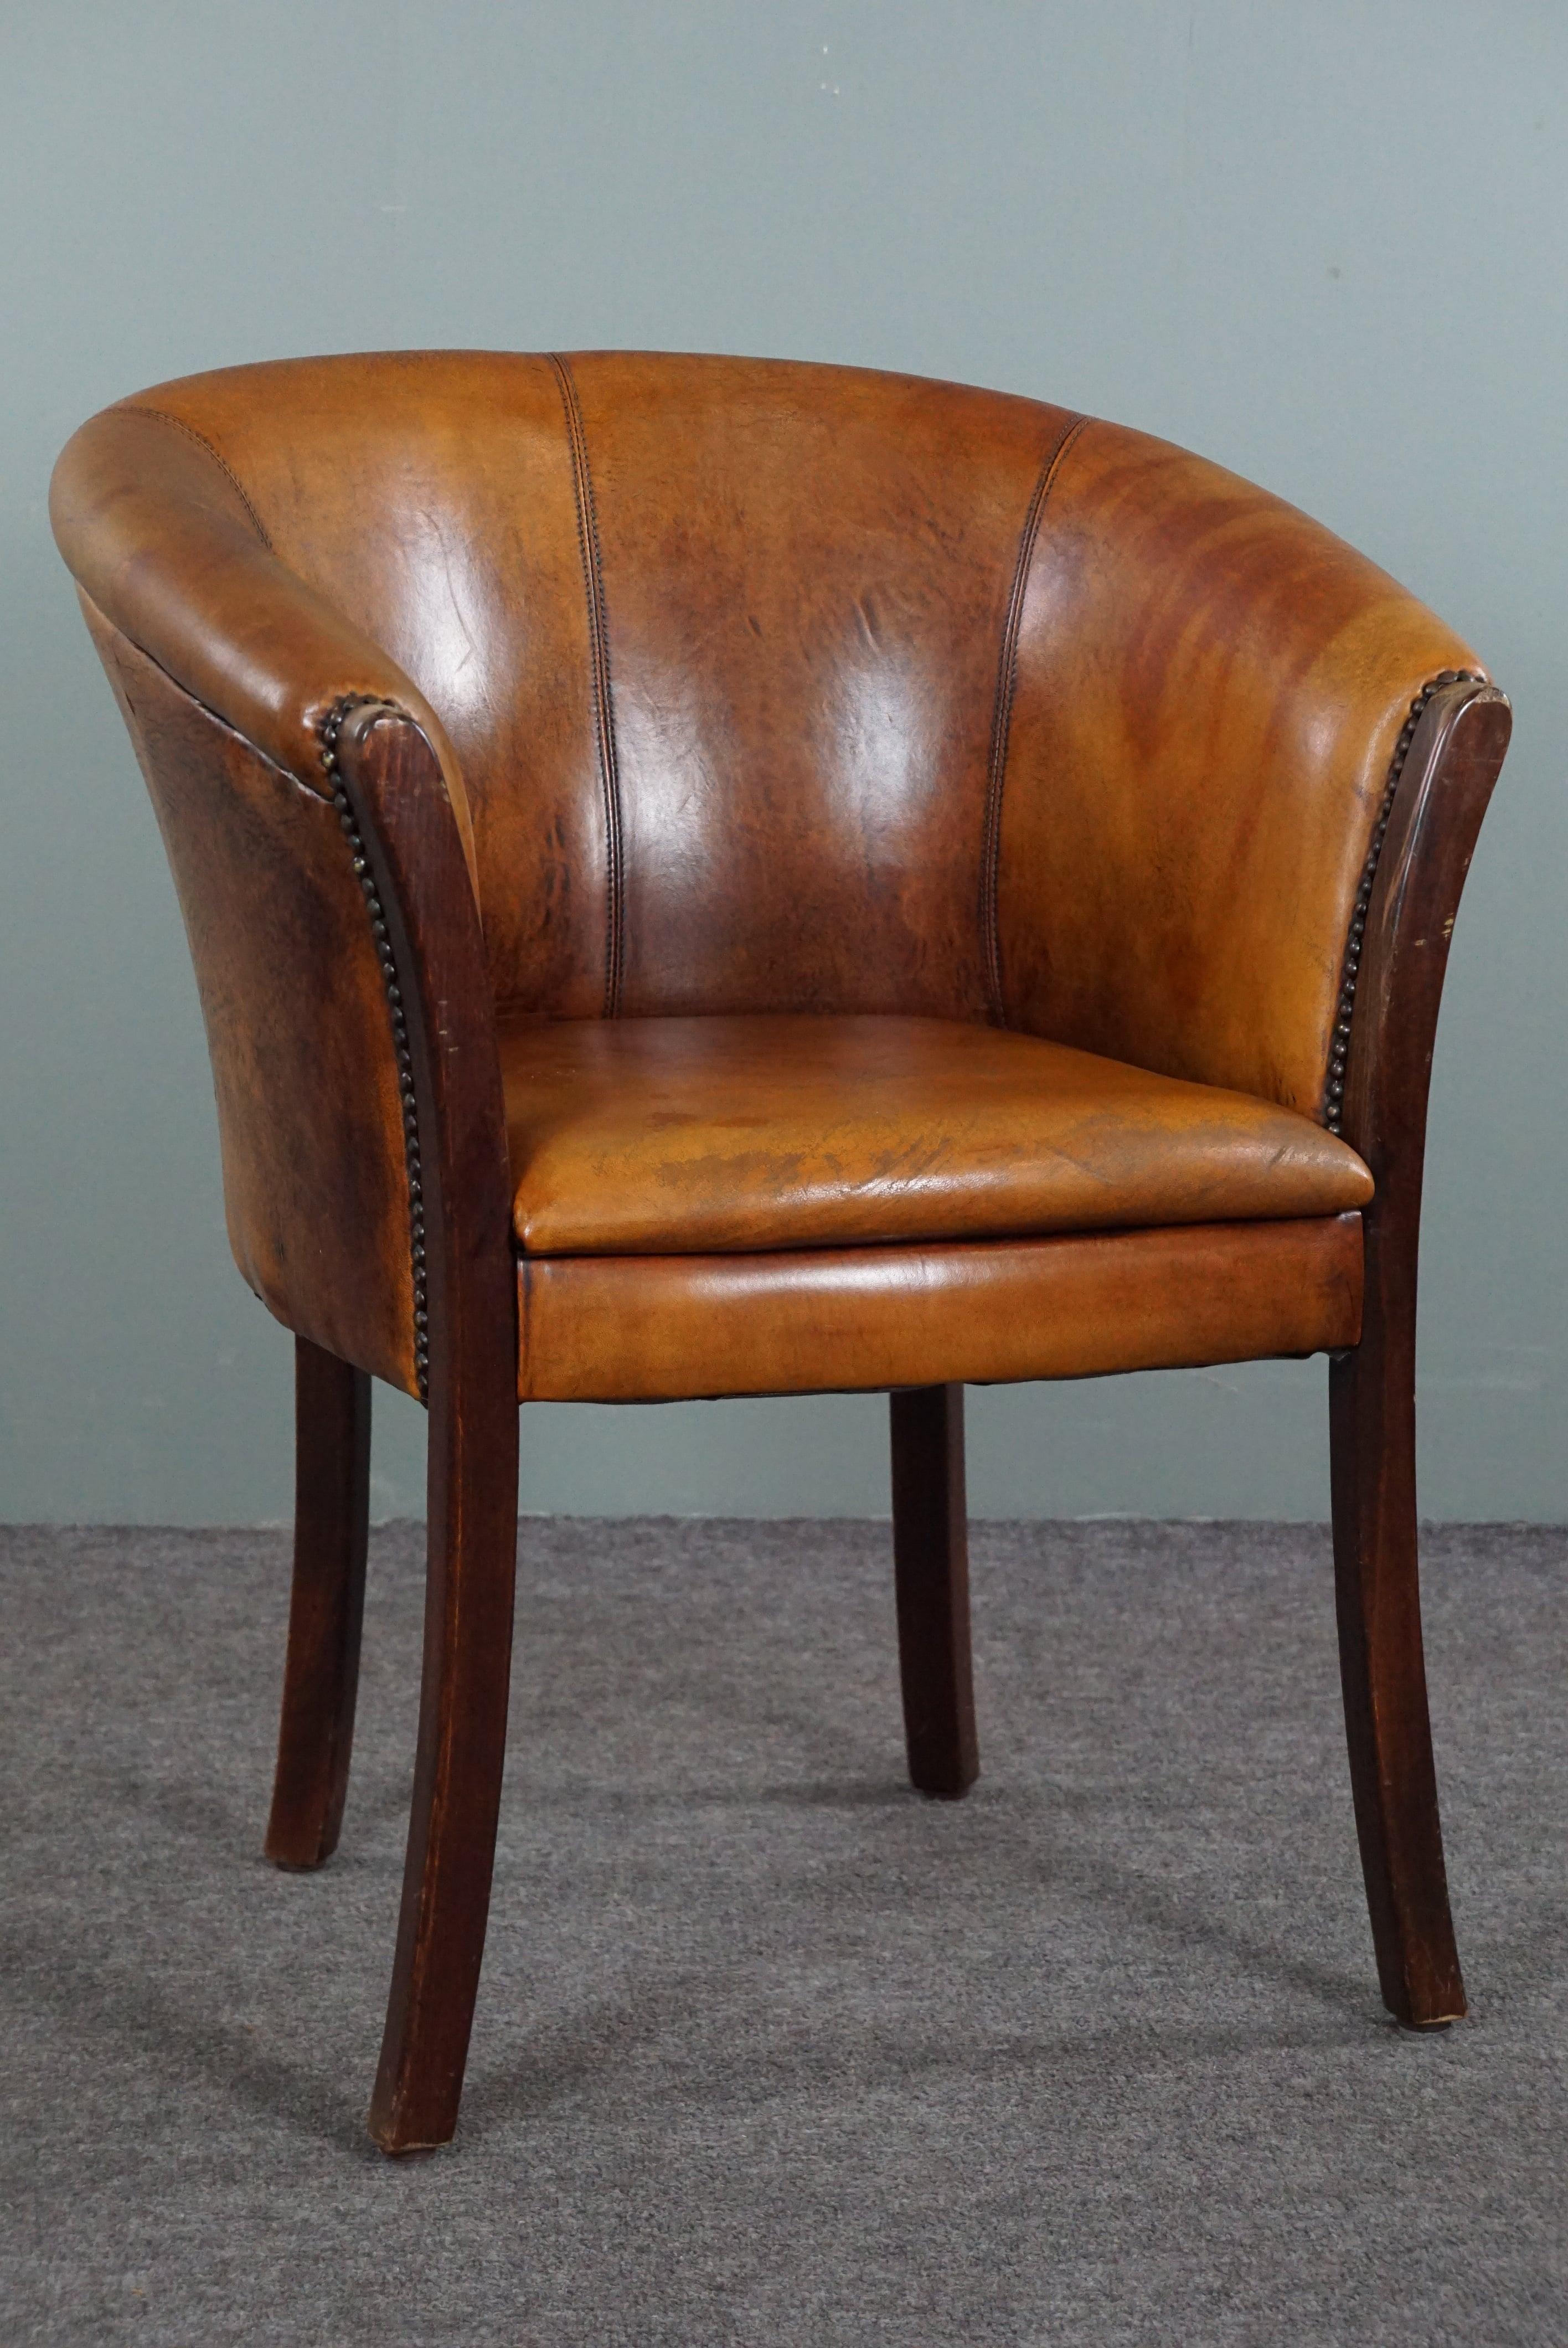 Cette magnifique chaise en peau de mouton, subtile et élancée, est ornée de clous décoratifs.

Ce fauteuil ou chaise d'appoint en cuir de mouton est multifonctionnel grâce à sa taille modeste et à la hauteur de son assise. Ce fauteuil en peau de